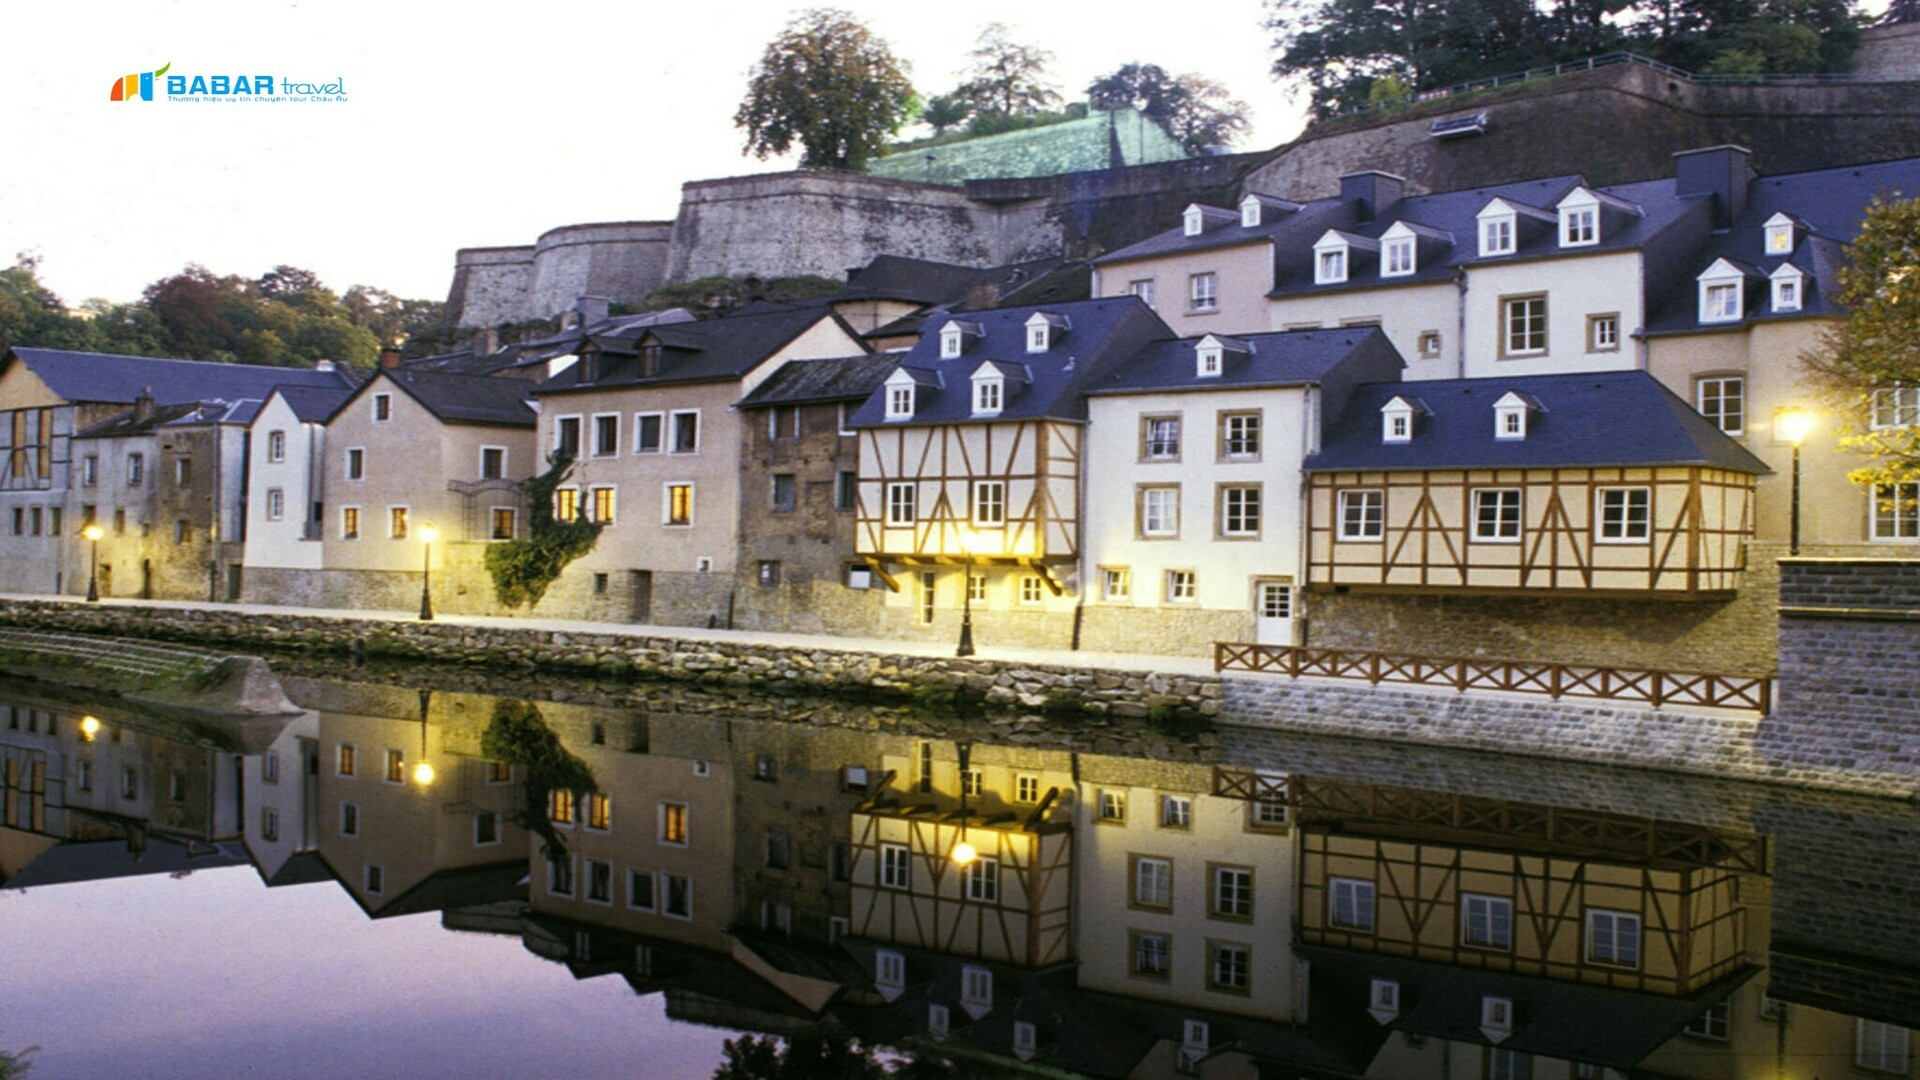 Luxembourg – “Thành phố Văn hóa” nơi Châu Âu tráng lệ